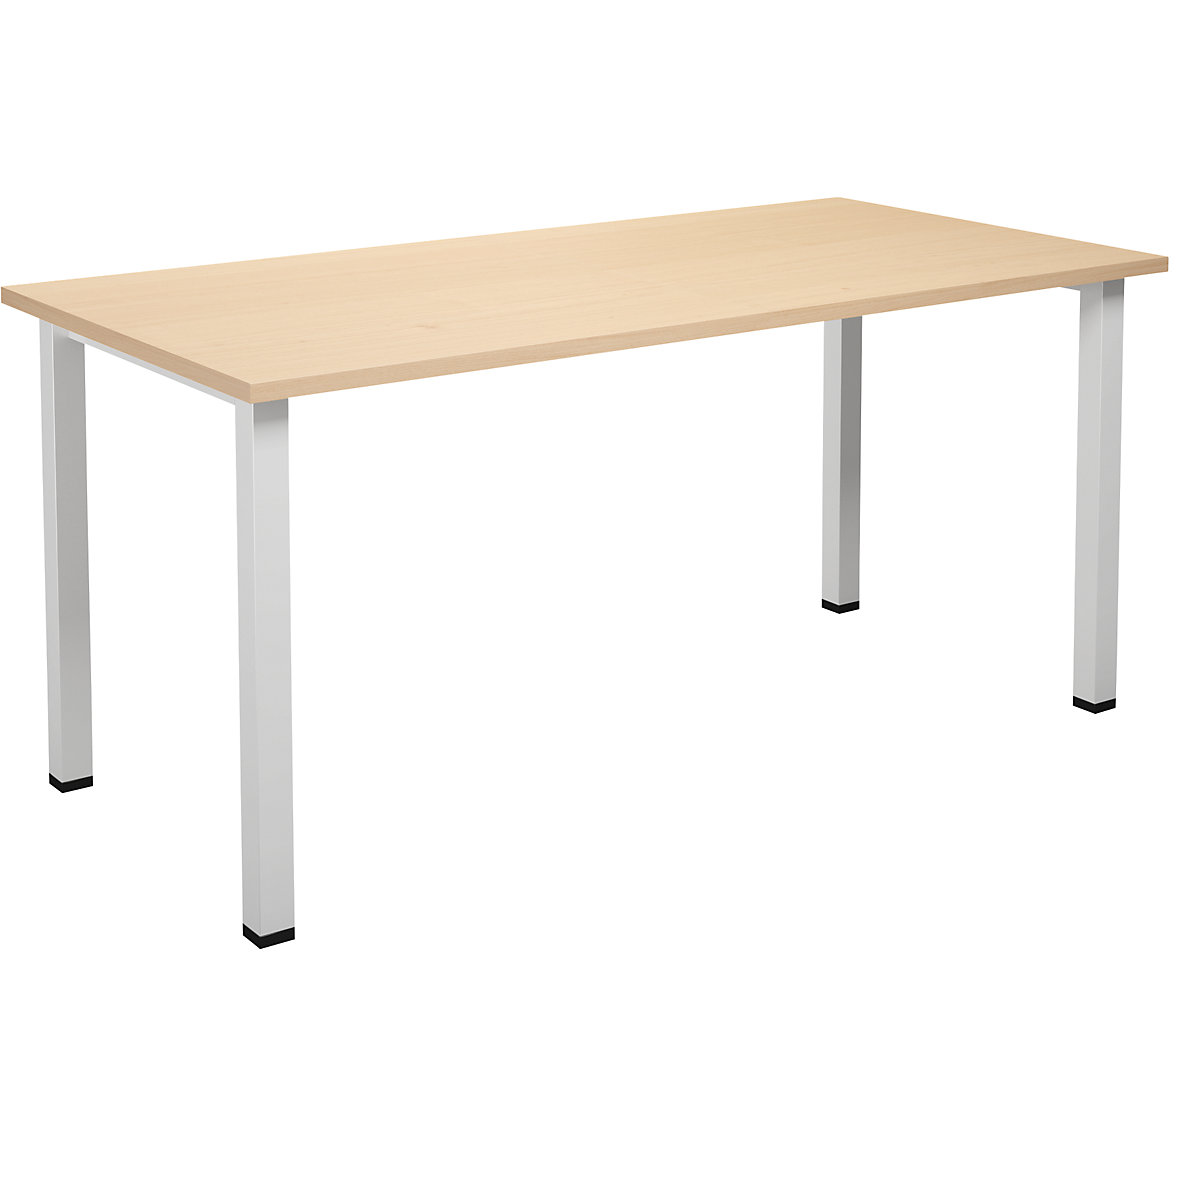 DUO-U multi-purpose desk, straight tabletop, WxD 1600 x 800 mm, birch, white-14